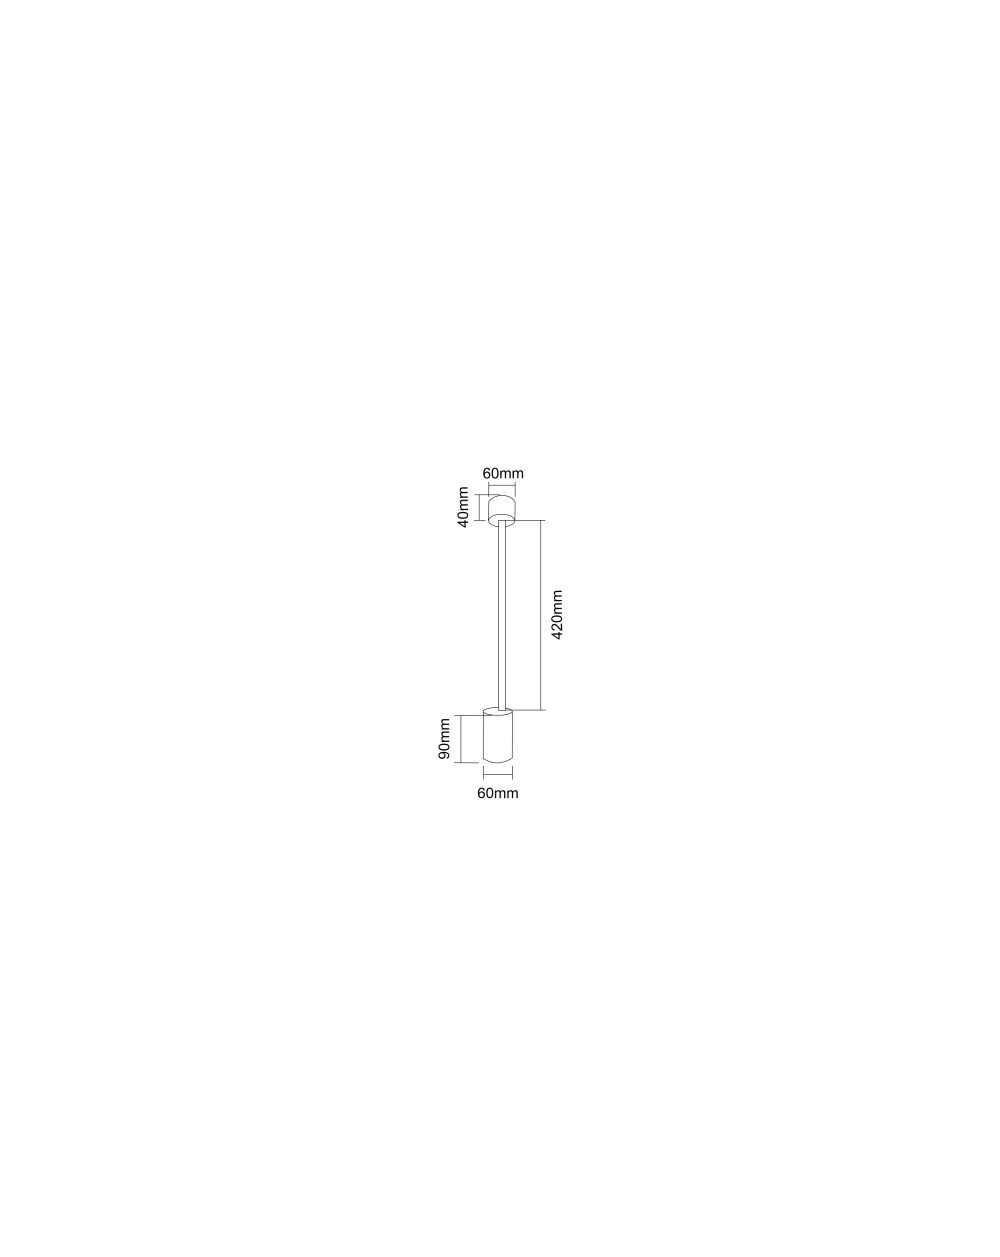 Lampa sufitowa Tuka Bianco L  / tuba reflektor / - Orlicki Design w kolorze białym lampa natynkowa regulowana